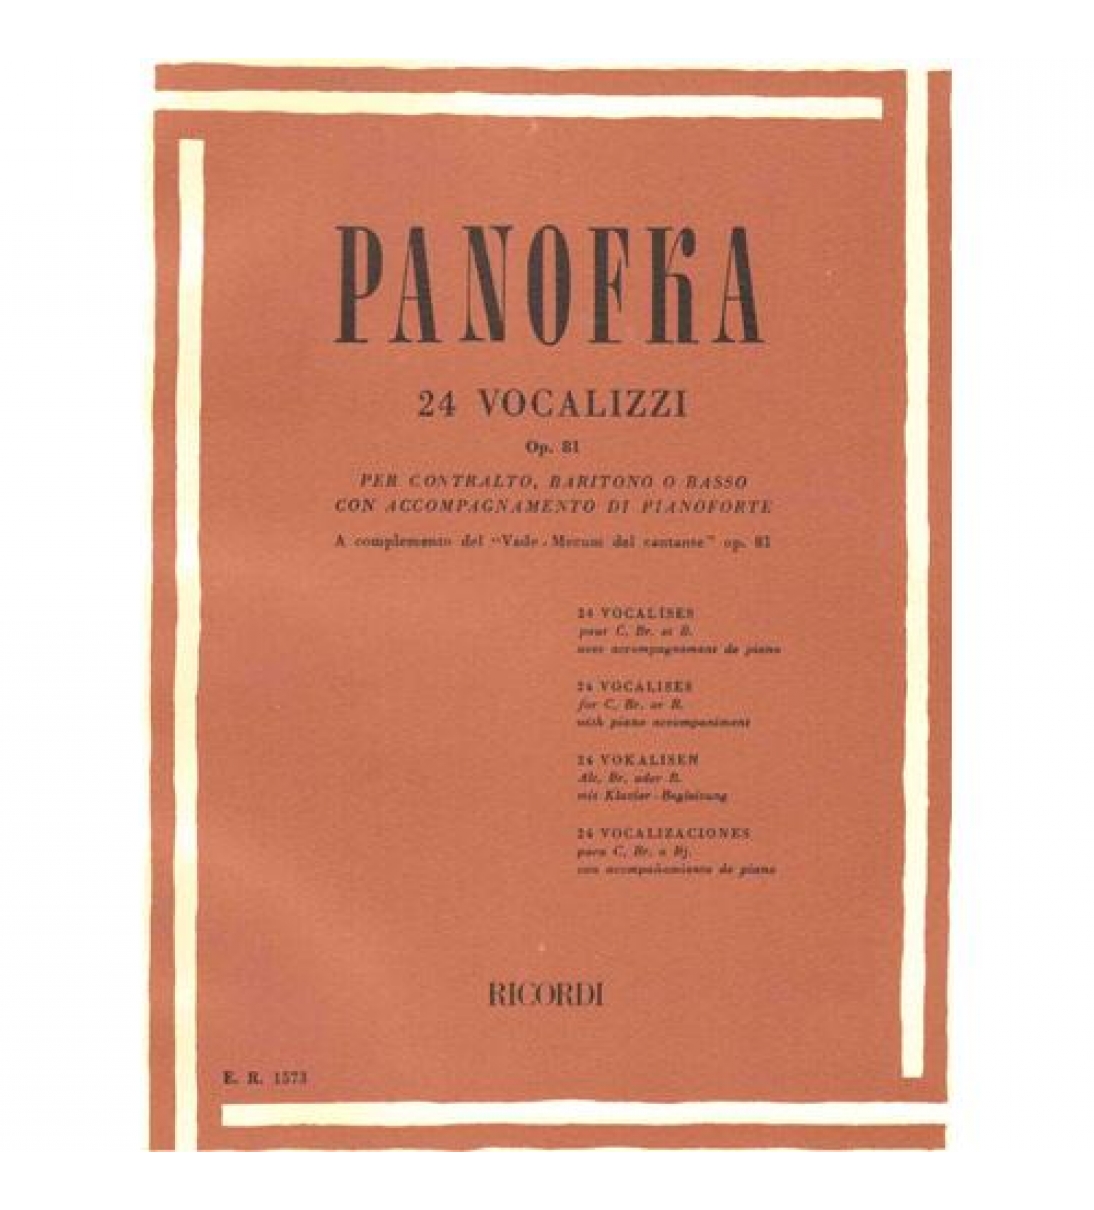 24 Vocalizzi Op. 81 per Contralto, Baritono o Basso